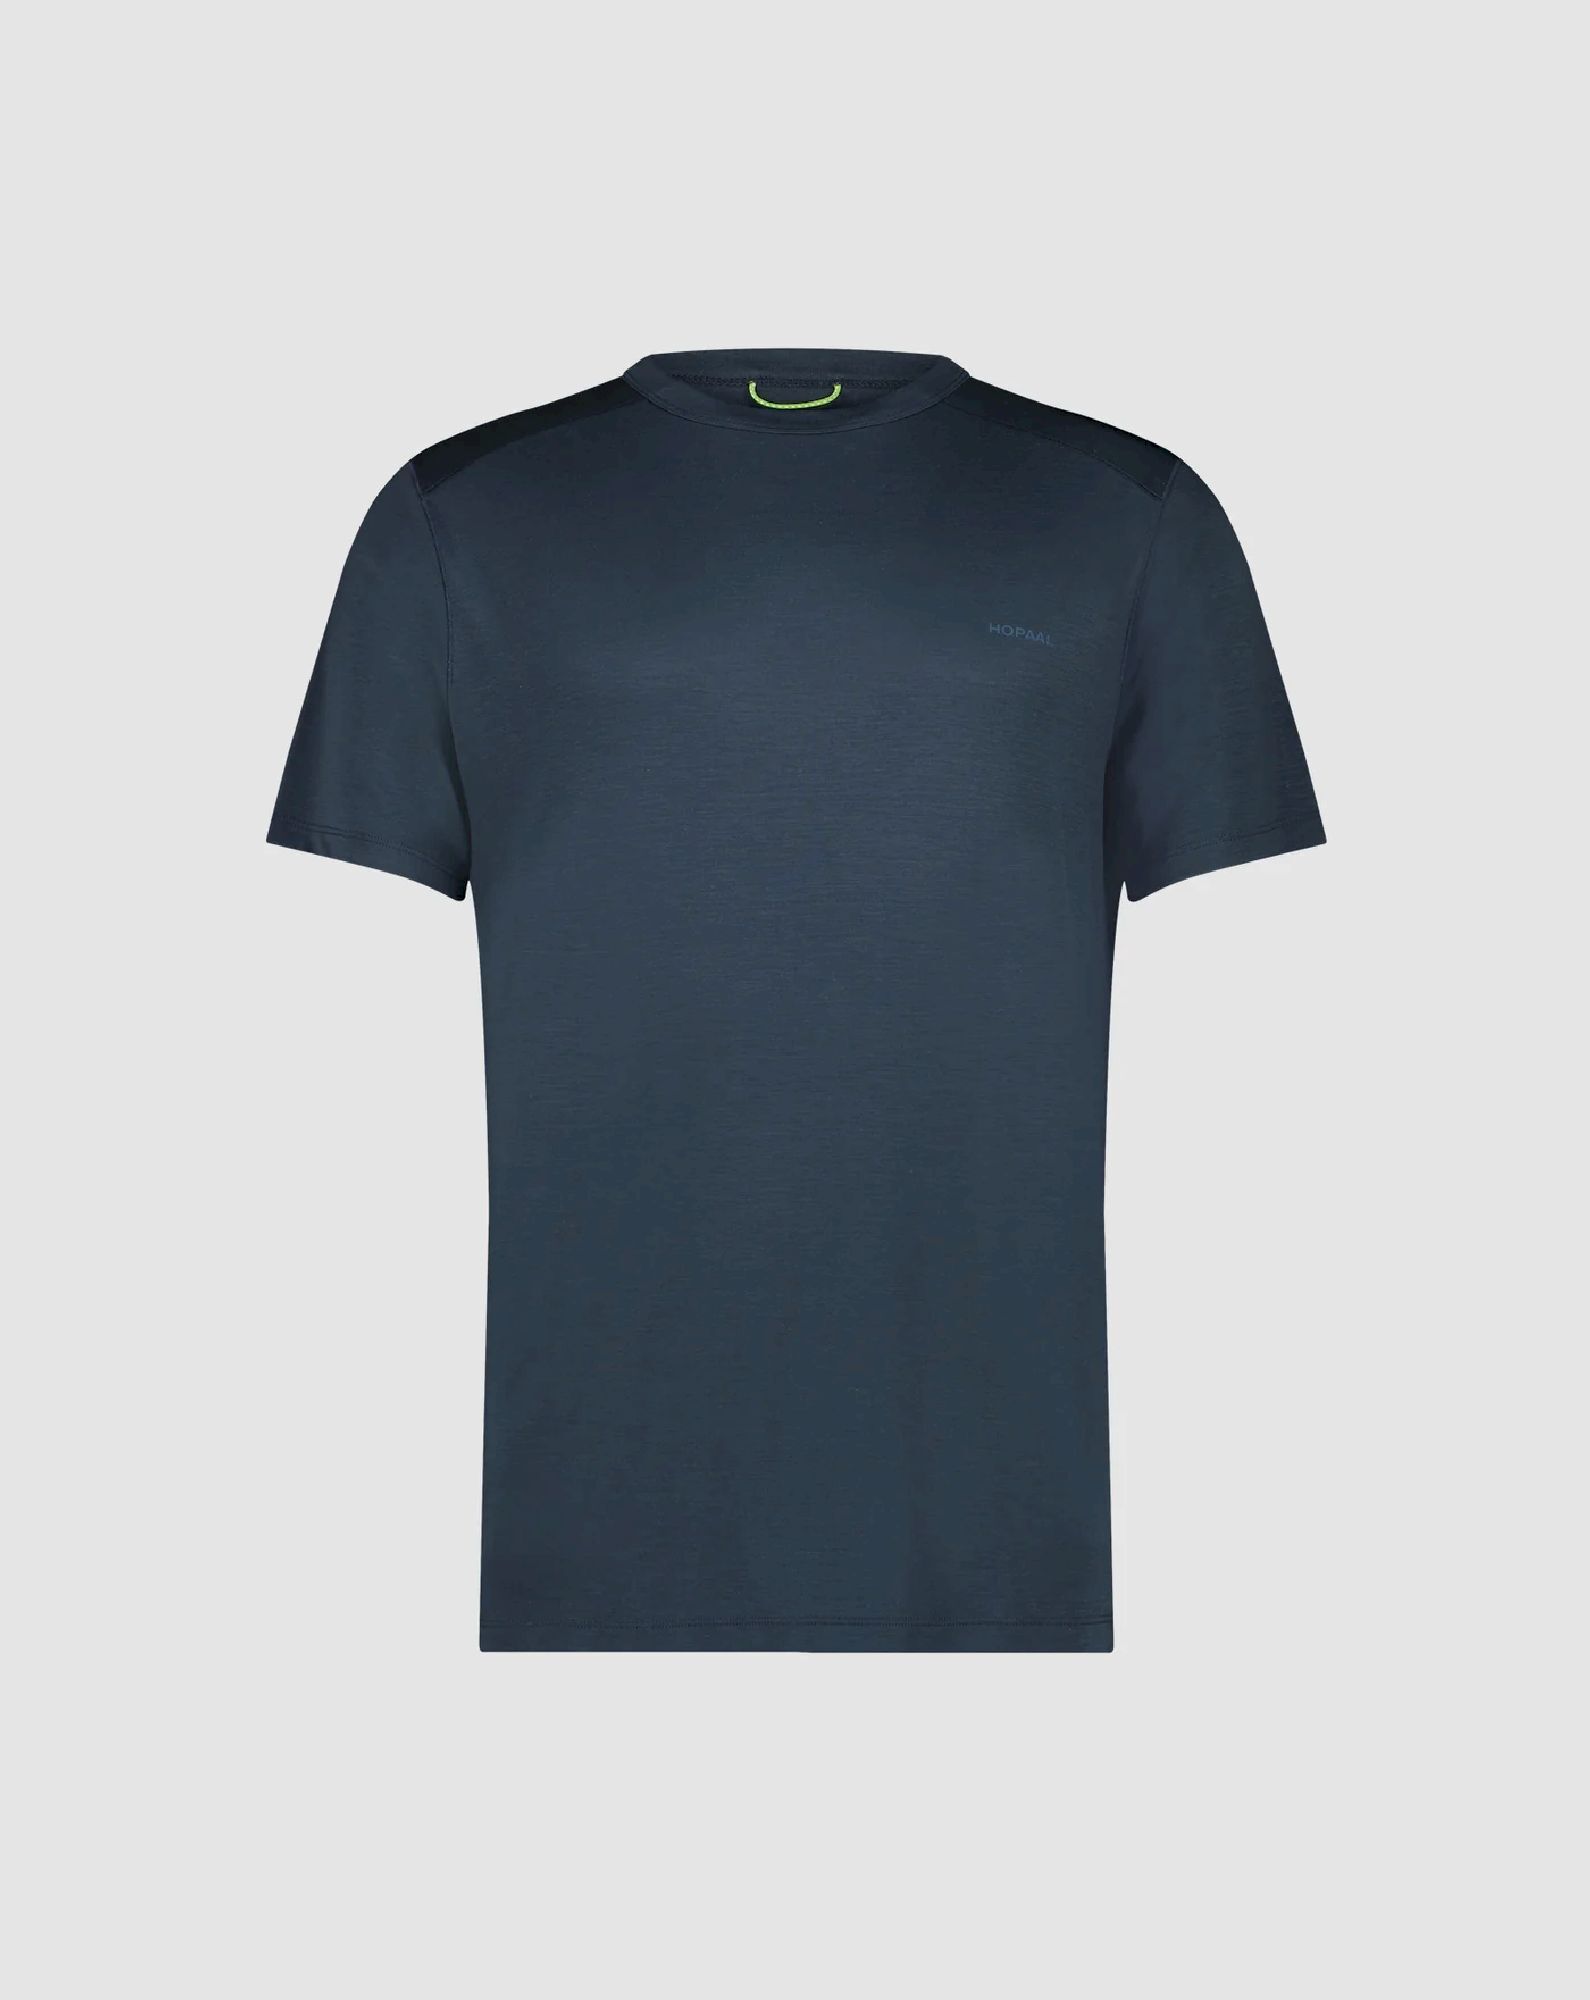 Hopaal T-Shirt Anti-Odeur - Camiseta - Hombre | Hardloop